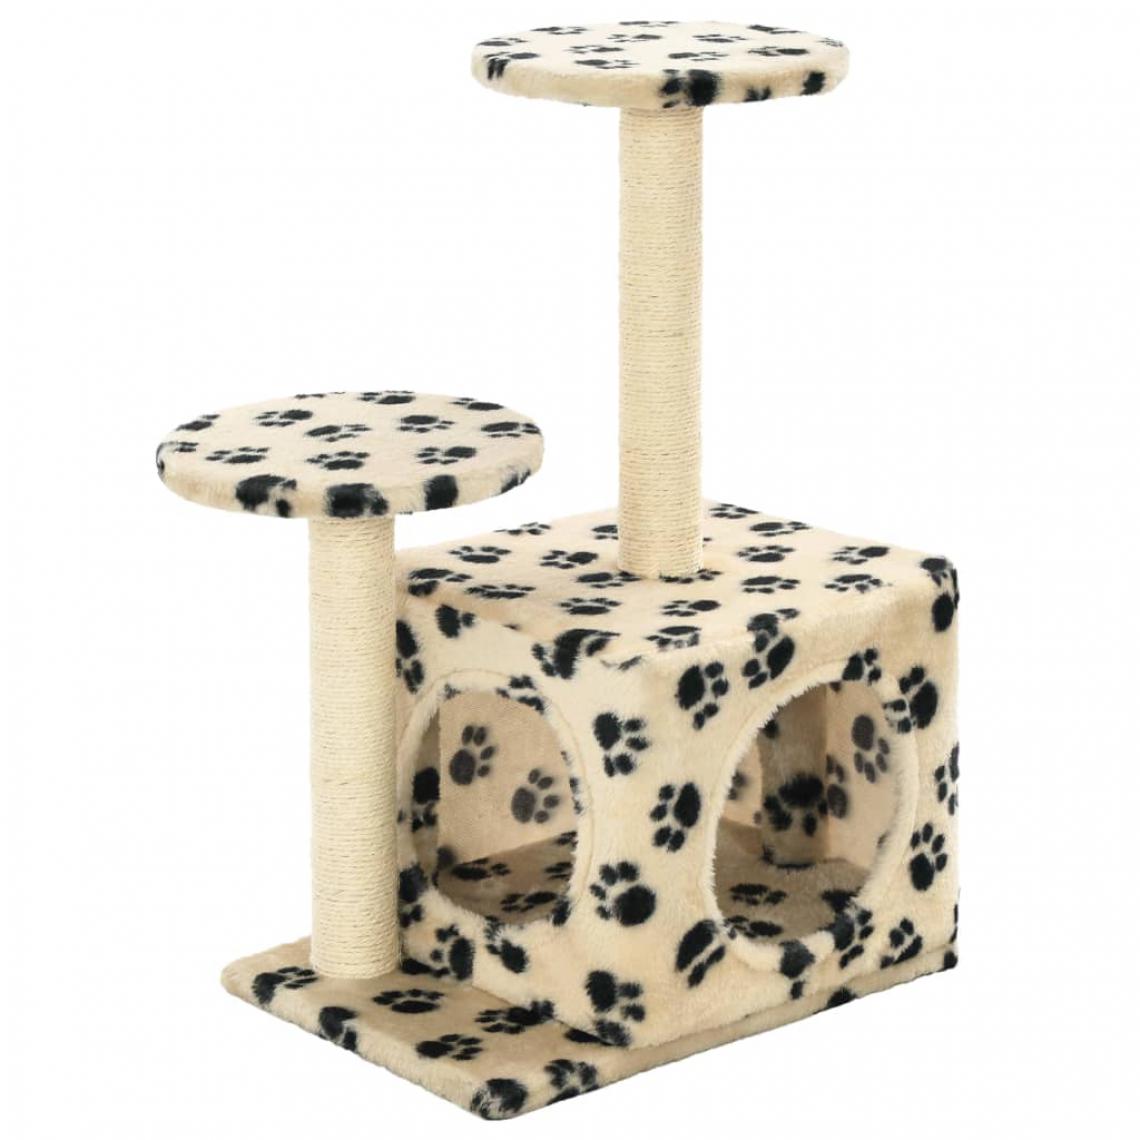 Helloshop26 - Arbre à chat griffoir grattoir niche jouet animaux peluché en sisal 60 cm beige motif de pattes 3702126 - Arbre à chat